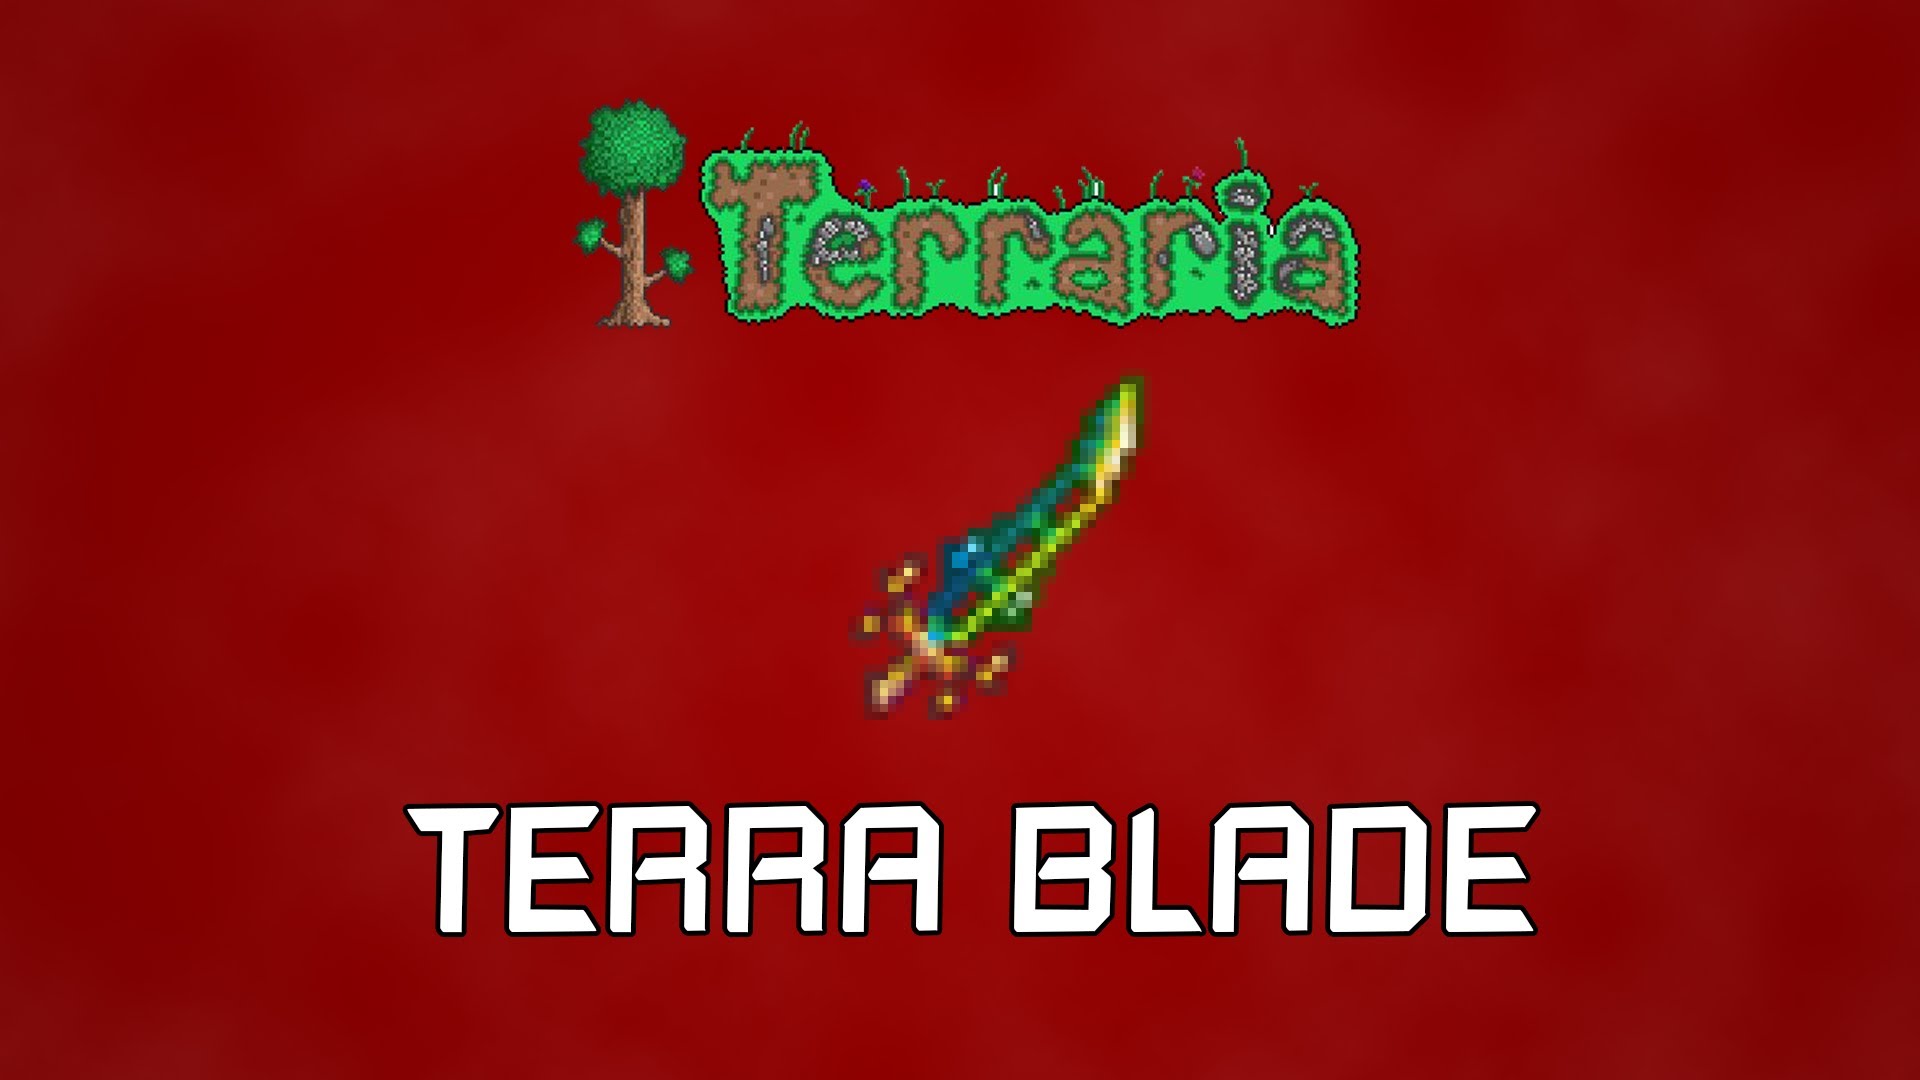 Celtic blade terraria фото 19